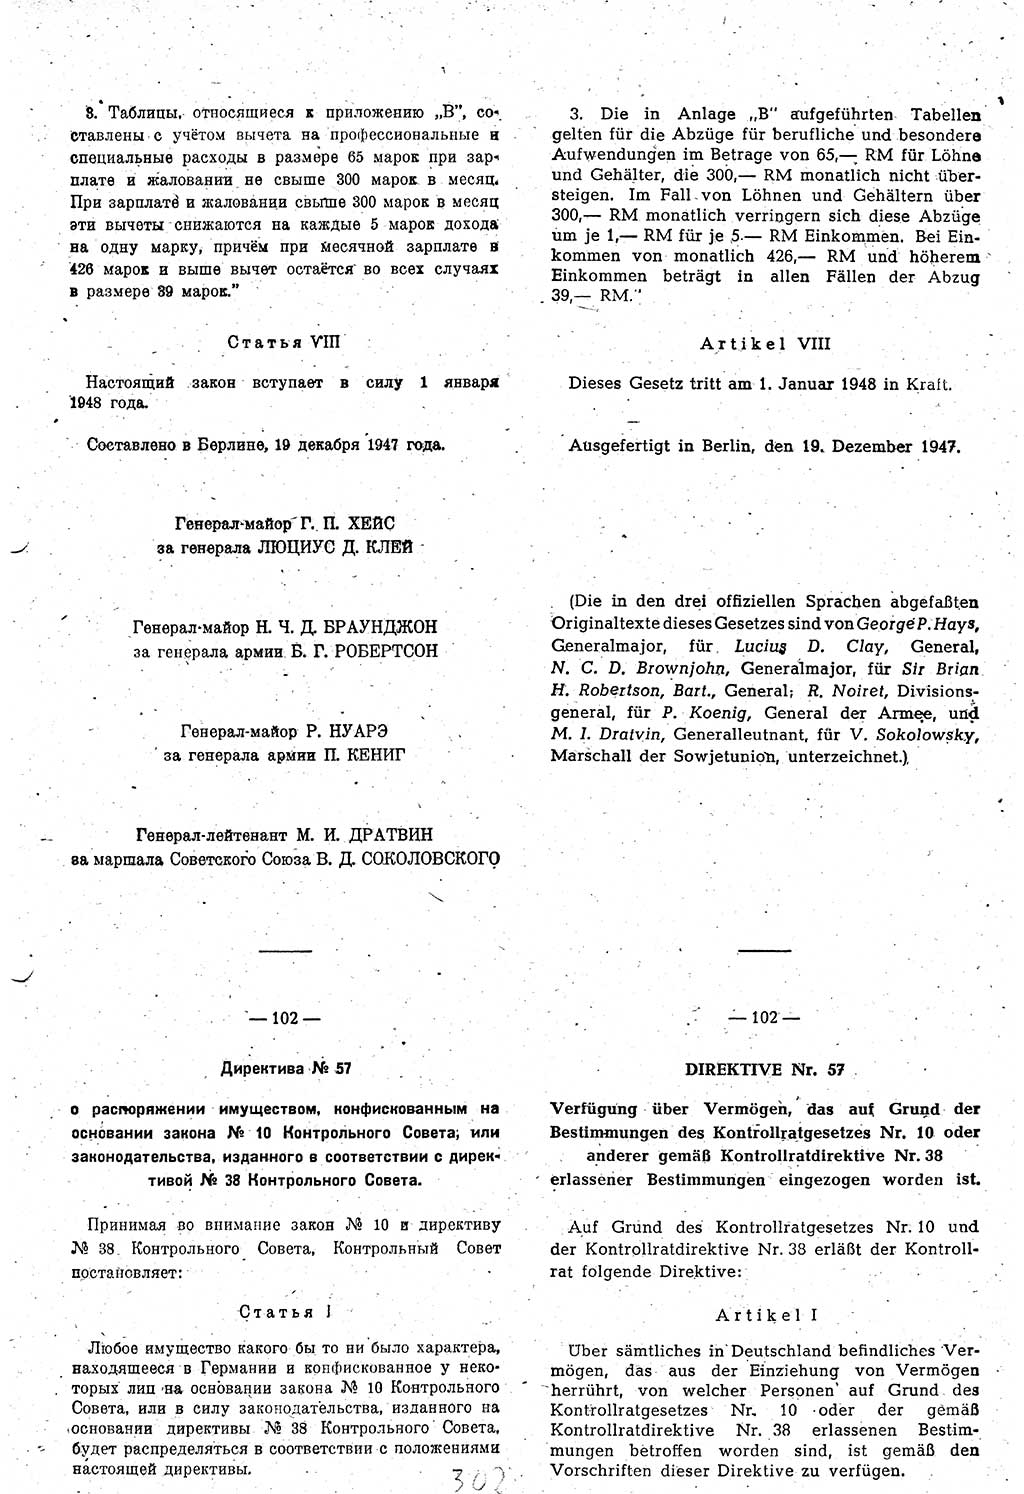 Amtsblatt des Kontrollrats (ABlKR) in Deutschland 1948, Seite 302/2 (ABlKR Dtl. 1948, S. 302/2)